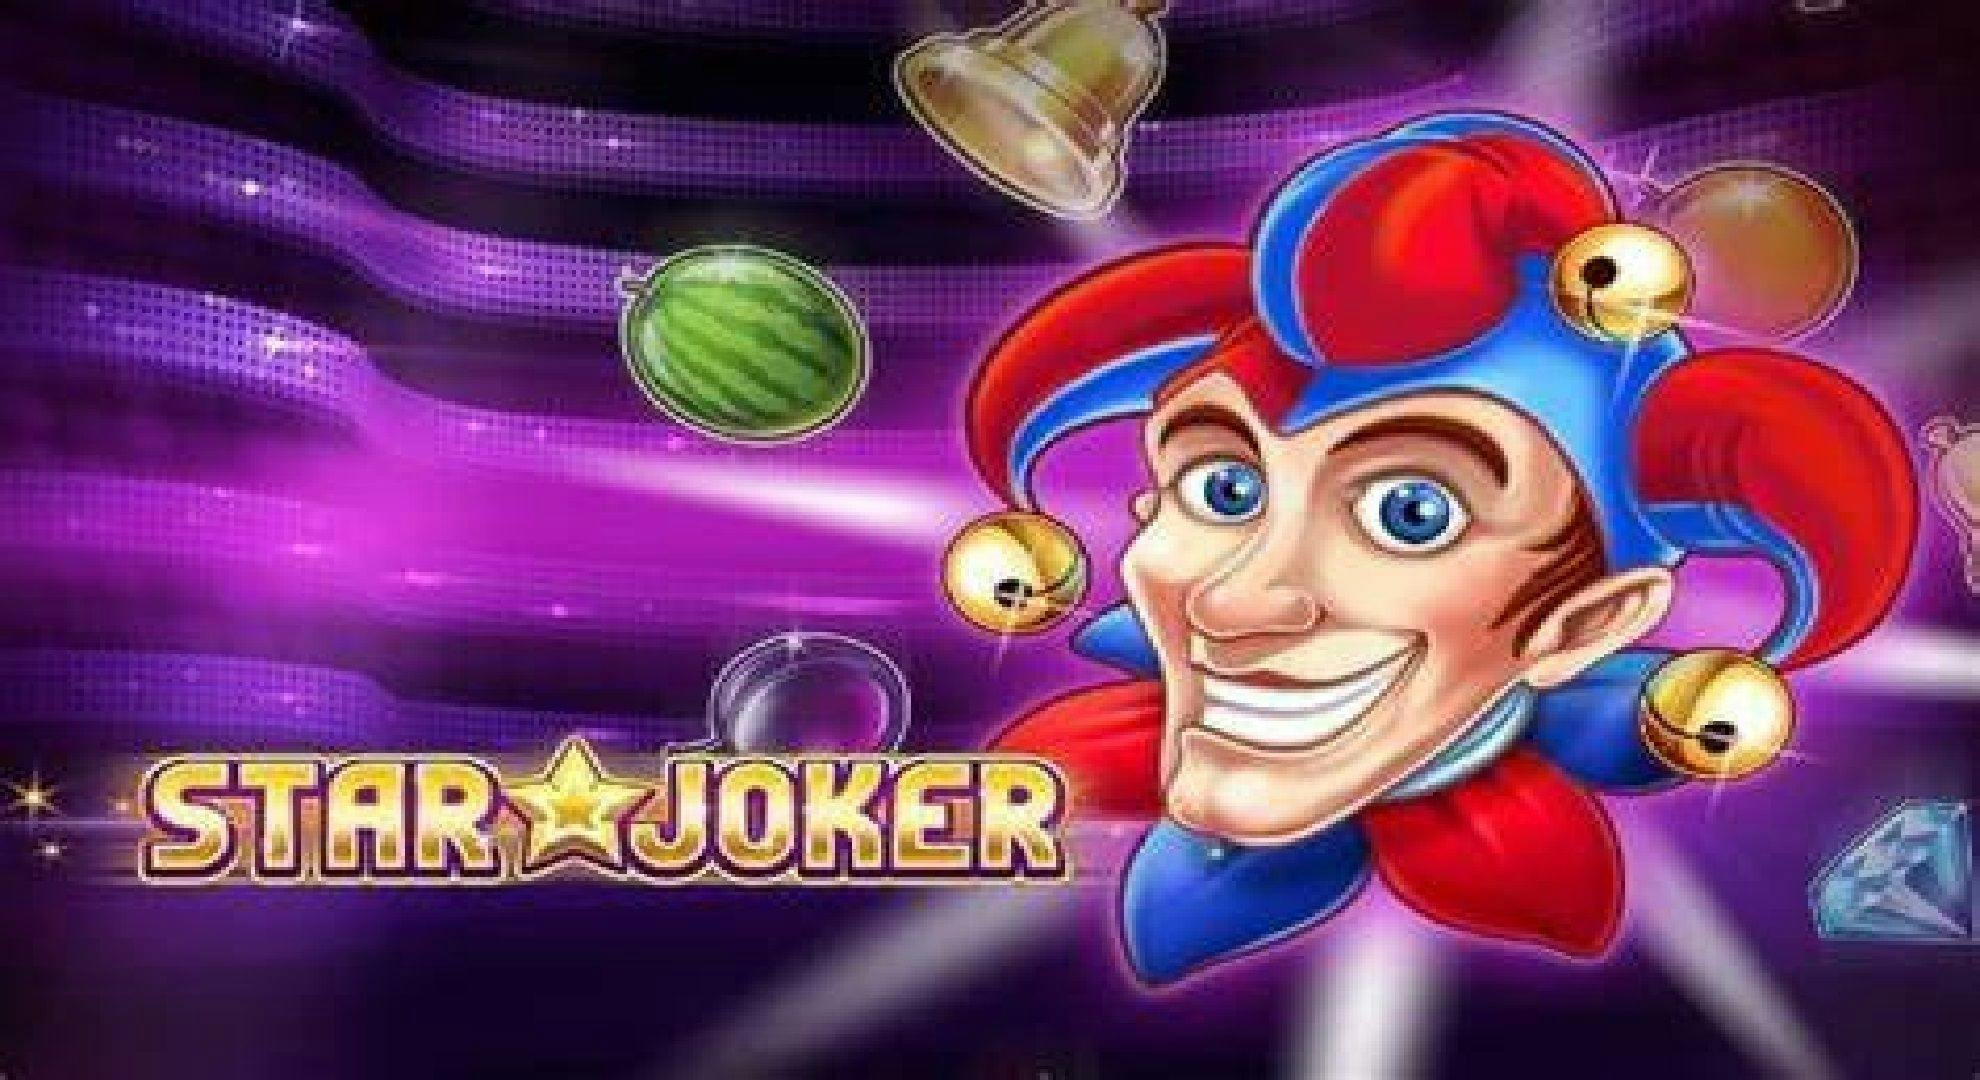 Star Joker Slot Online Free Play